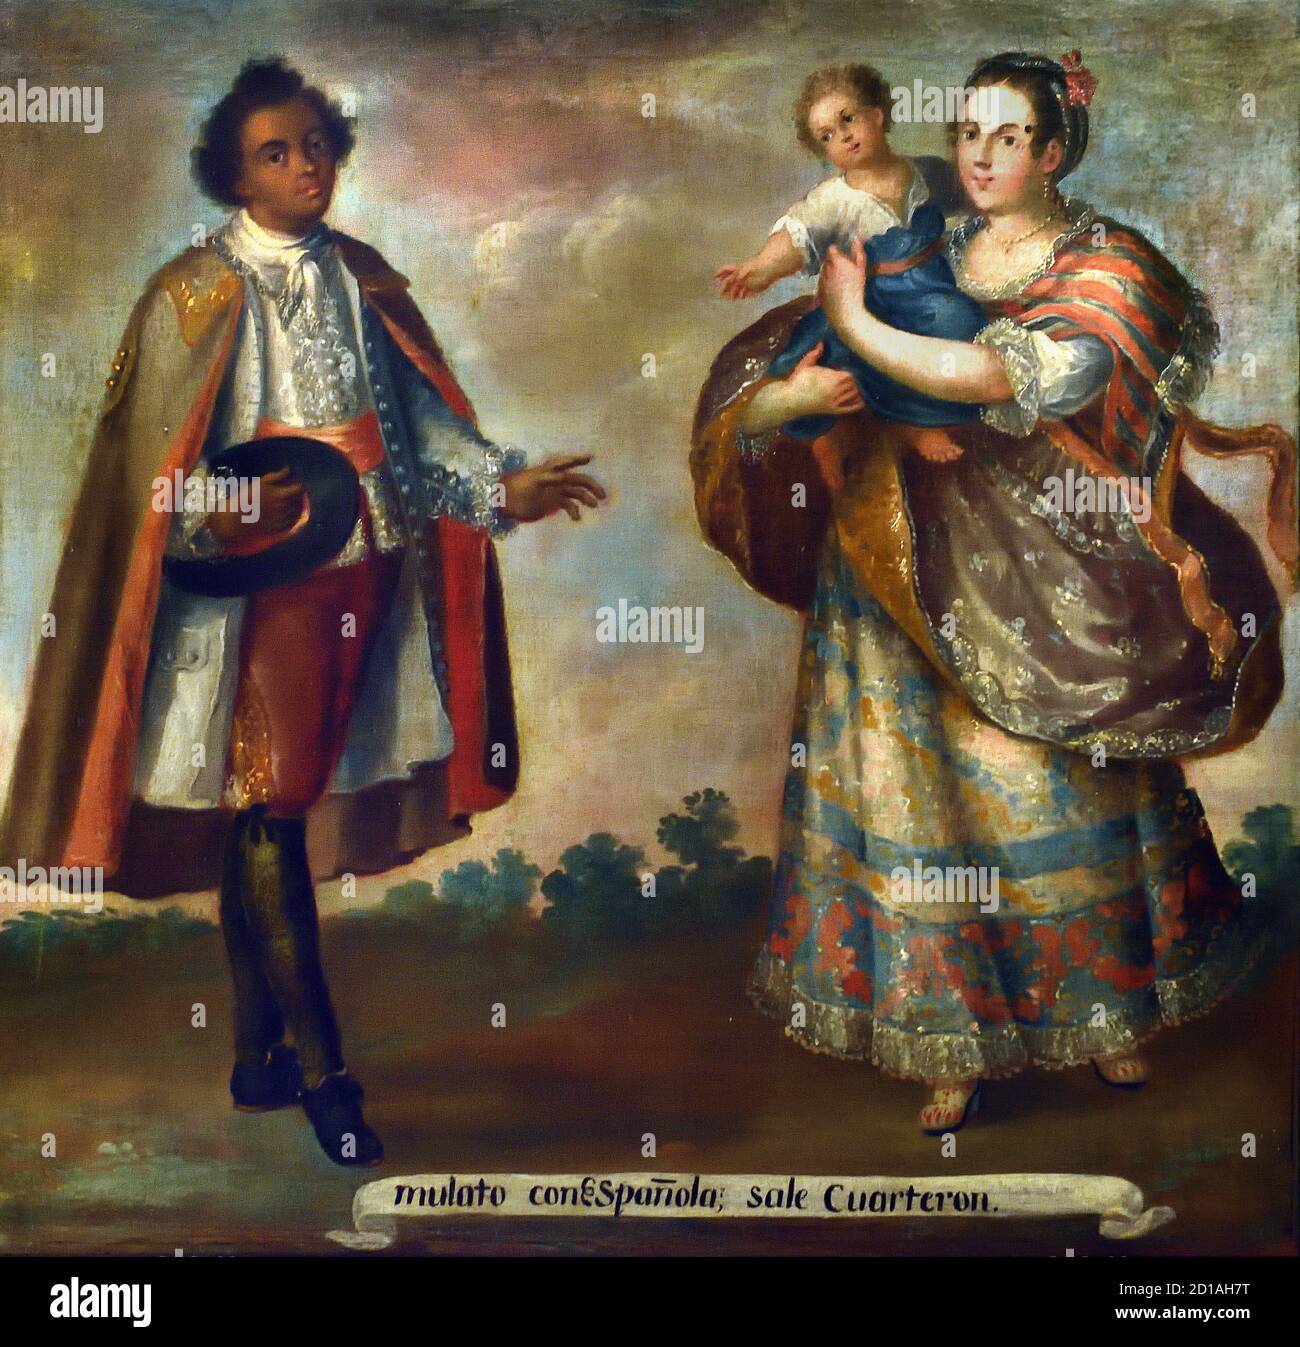 Luis Berrueco,1717-1749 Mexique 18ème siècle ( Luis Berrueco vient d'une dynastie de peintres à Puebla et a eu un grand nombre d'adeptes) chacune des scènes de miscegenation est identifié avec des inscriptions faisant référence à leur degré de miscegenation basée sur les tribus indigènes, européennes et africaines, Caractéristique d'un genre pictural développé dans la Viceroyalty de la Nouvelle-Espagne au cours du XVIIIe siècle. . Ce genre est connu sous le nom de 'caste painting' Banque D'Images